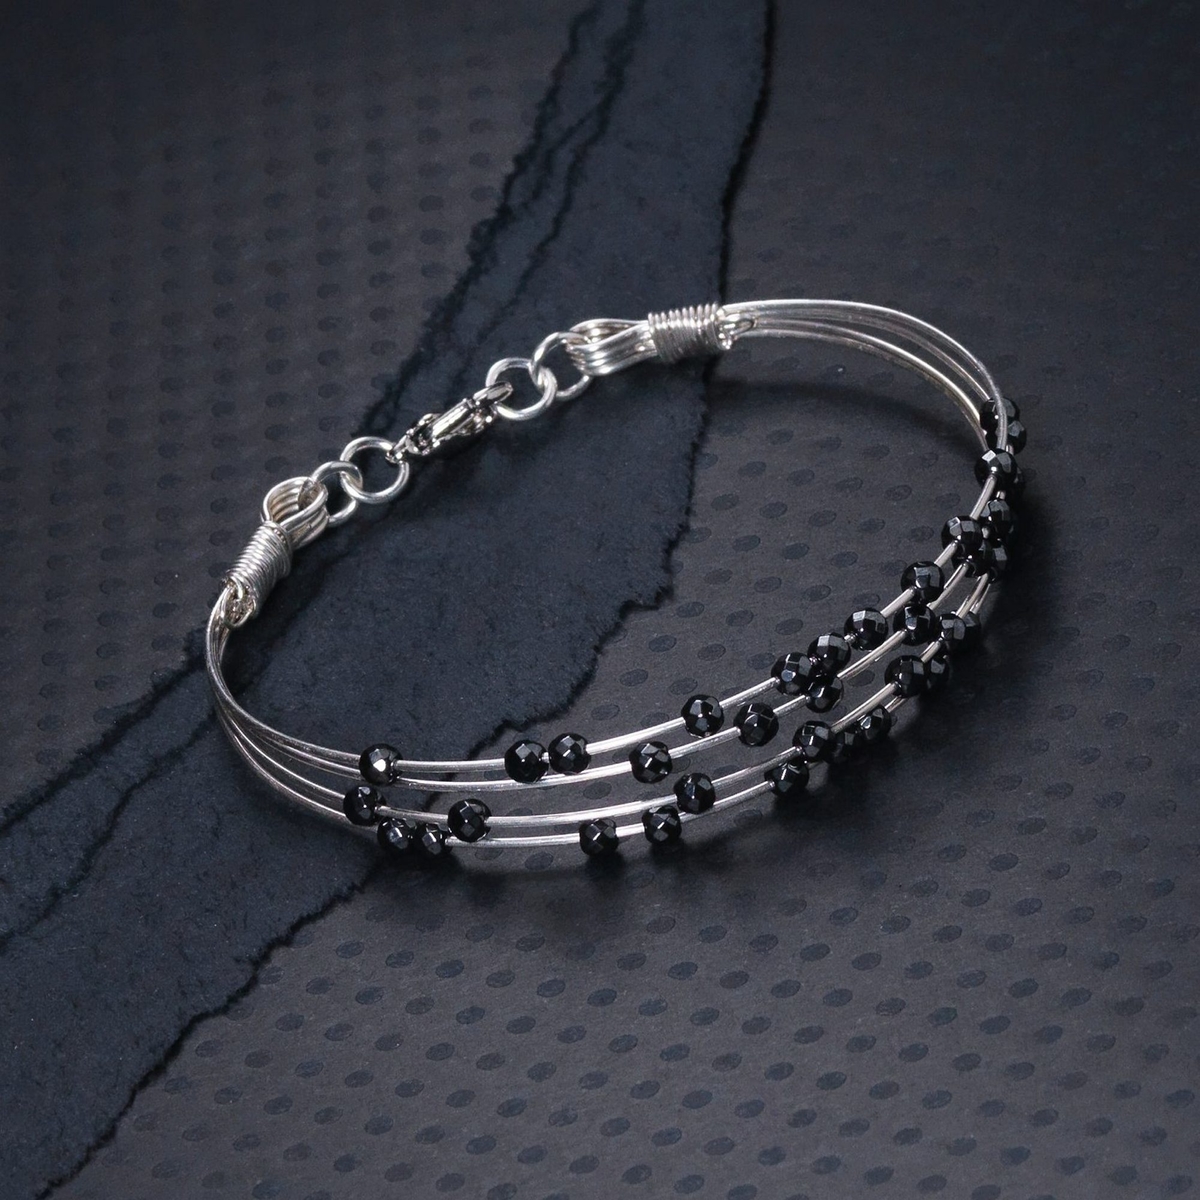 Stylish silver bracelet